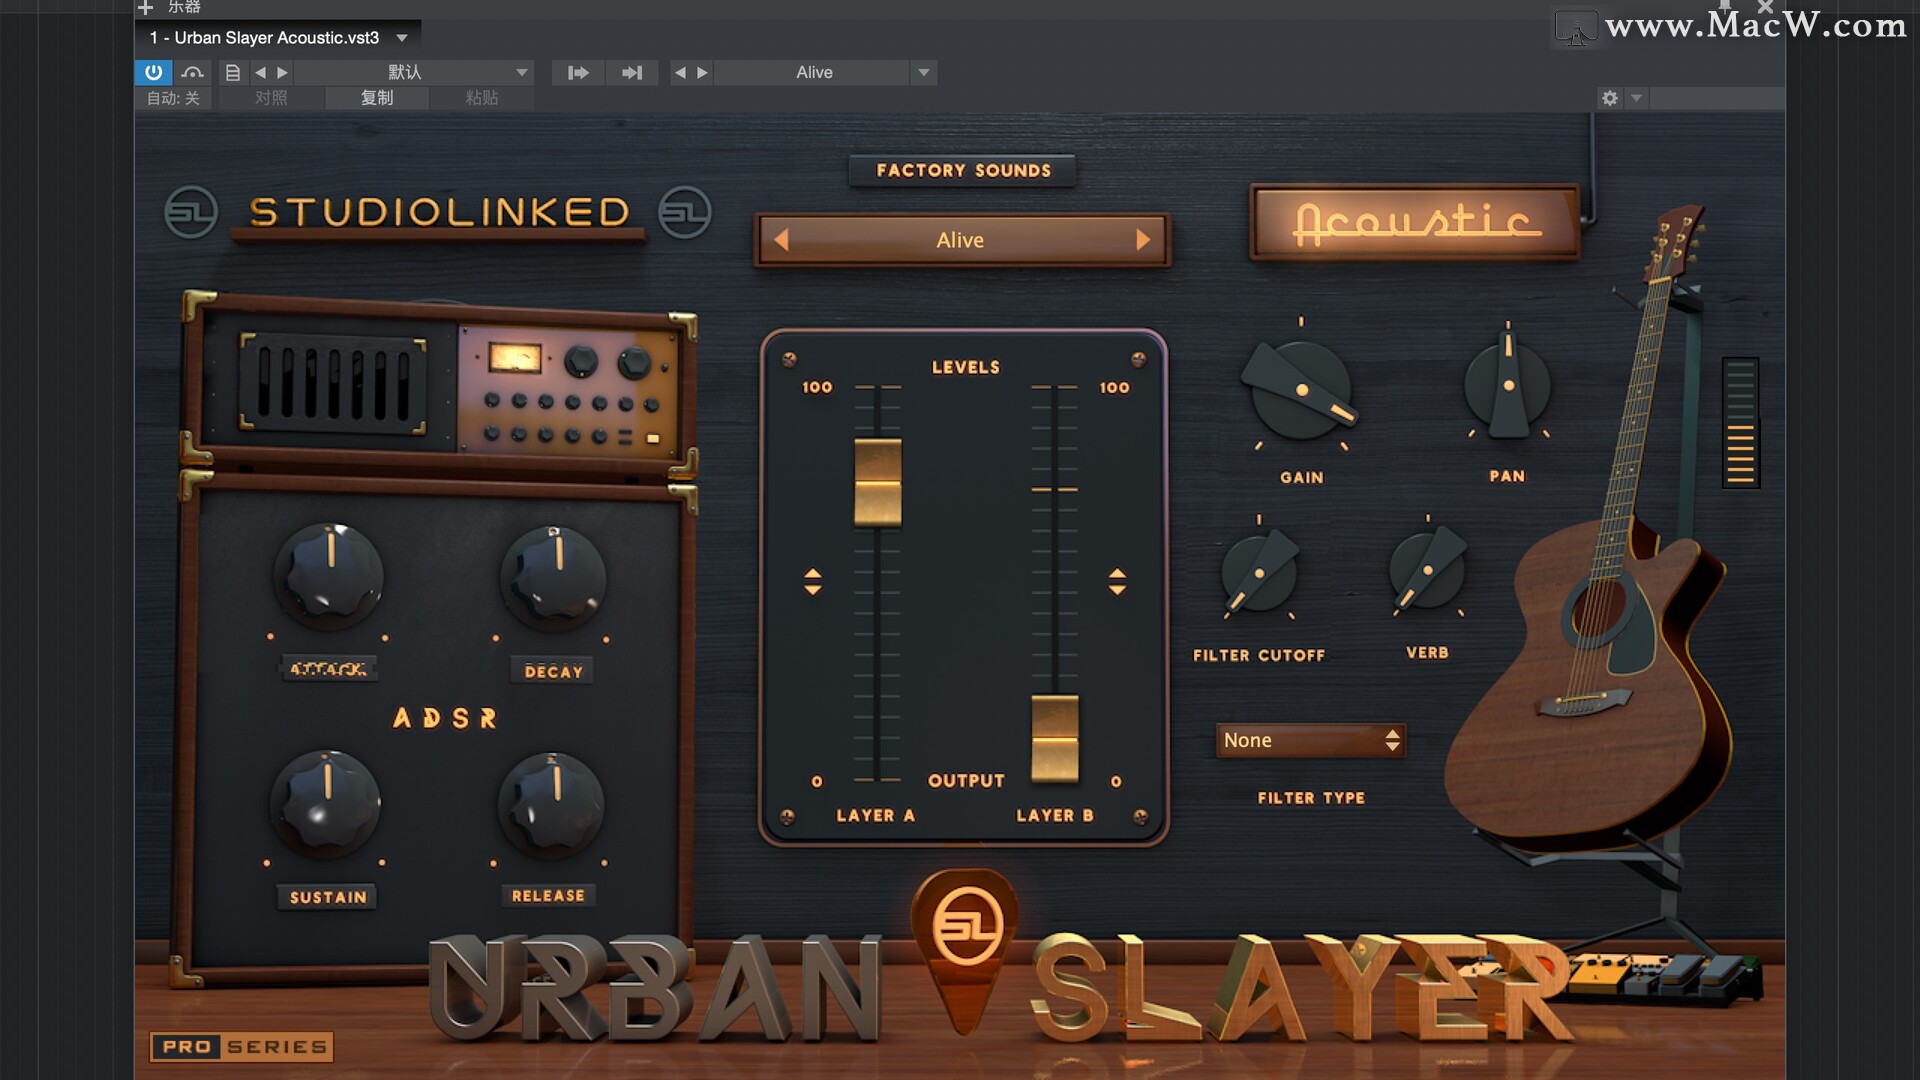 StudioLinked Urban Slayer Acoustic for Mac(声学虚拟乐器) 